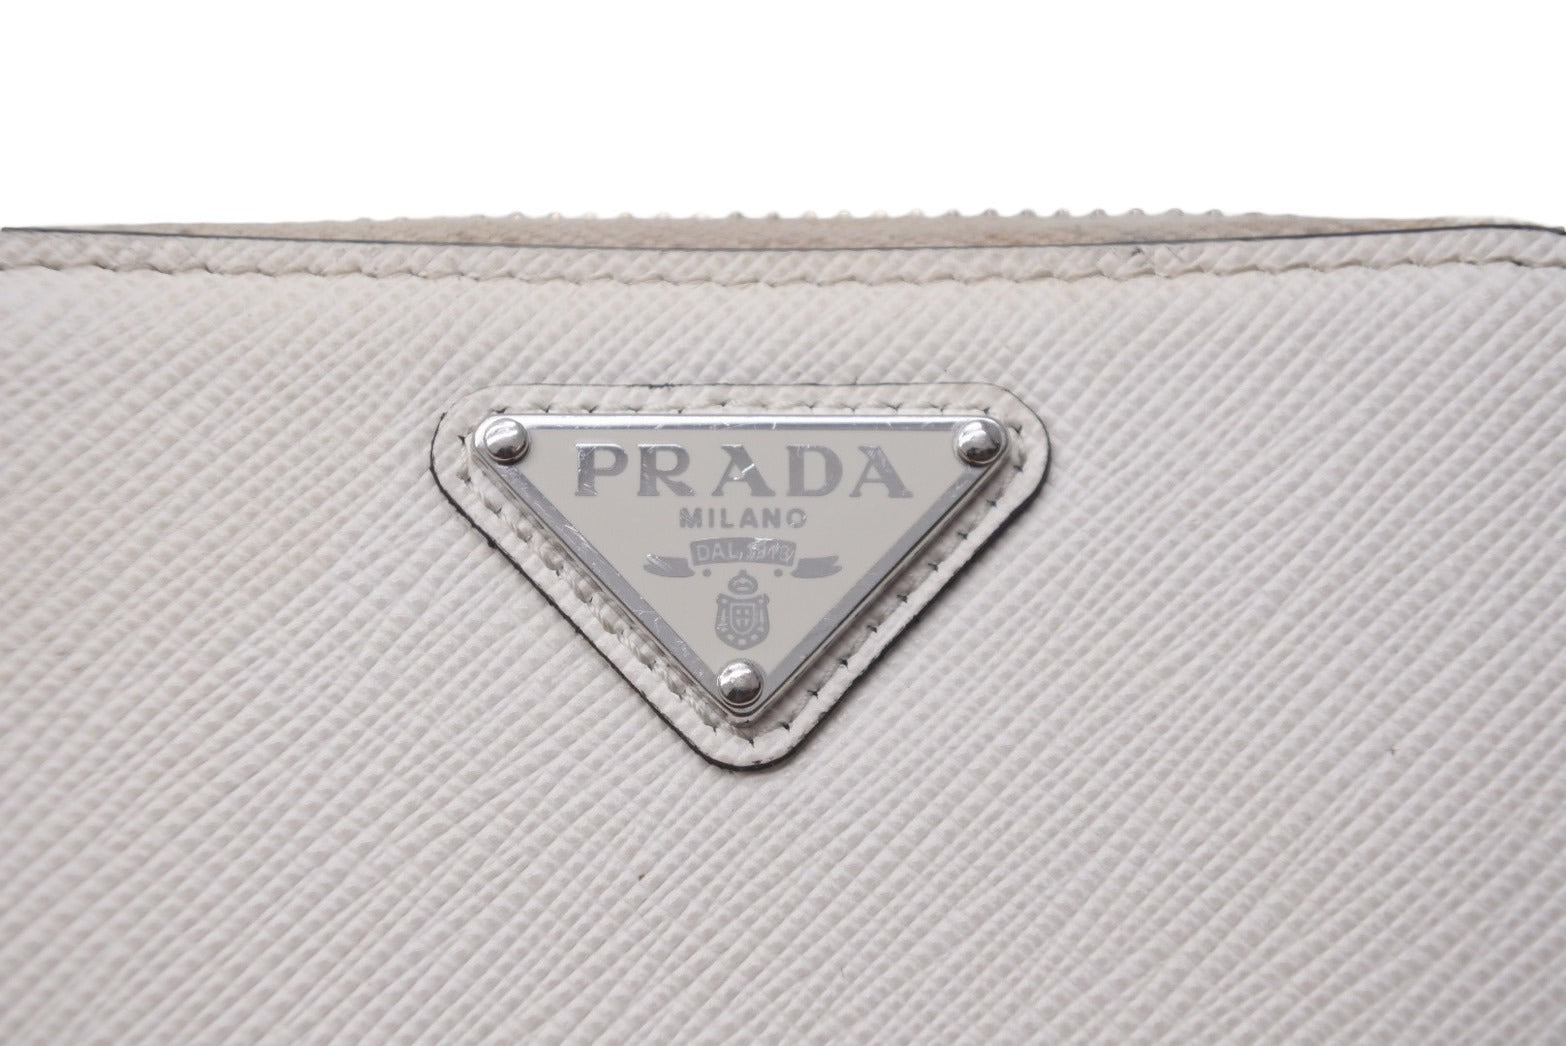 PRADA プラダ コインケース 小銭入れ カードケース 2MM003 三角ロゴ 